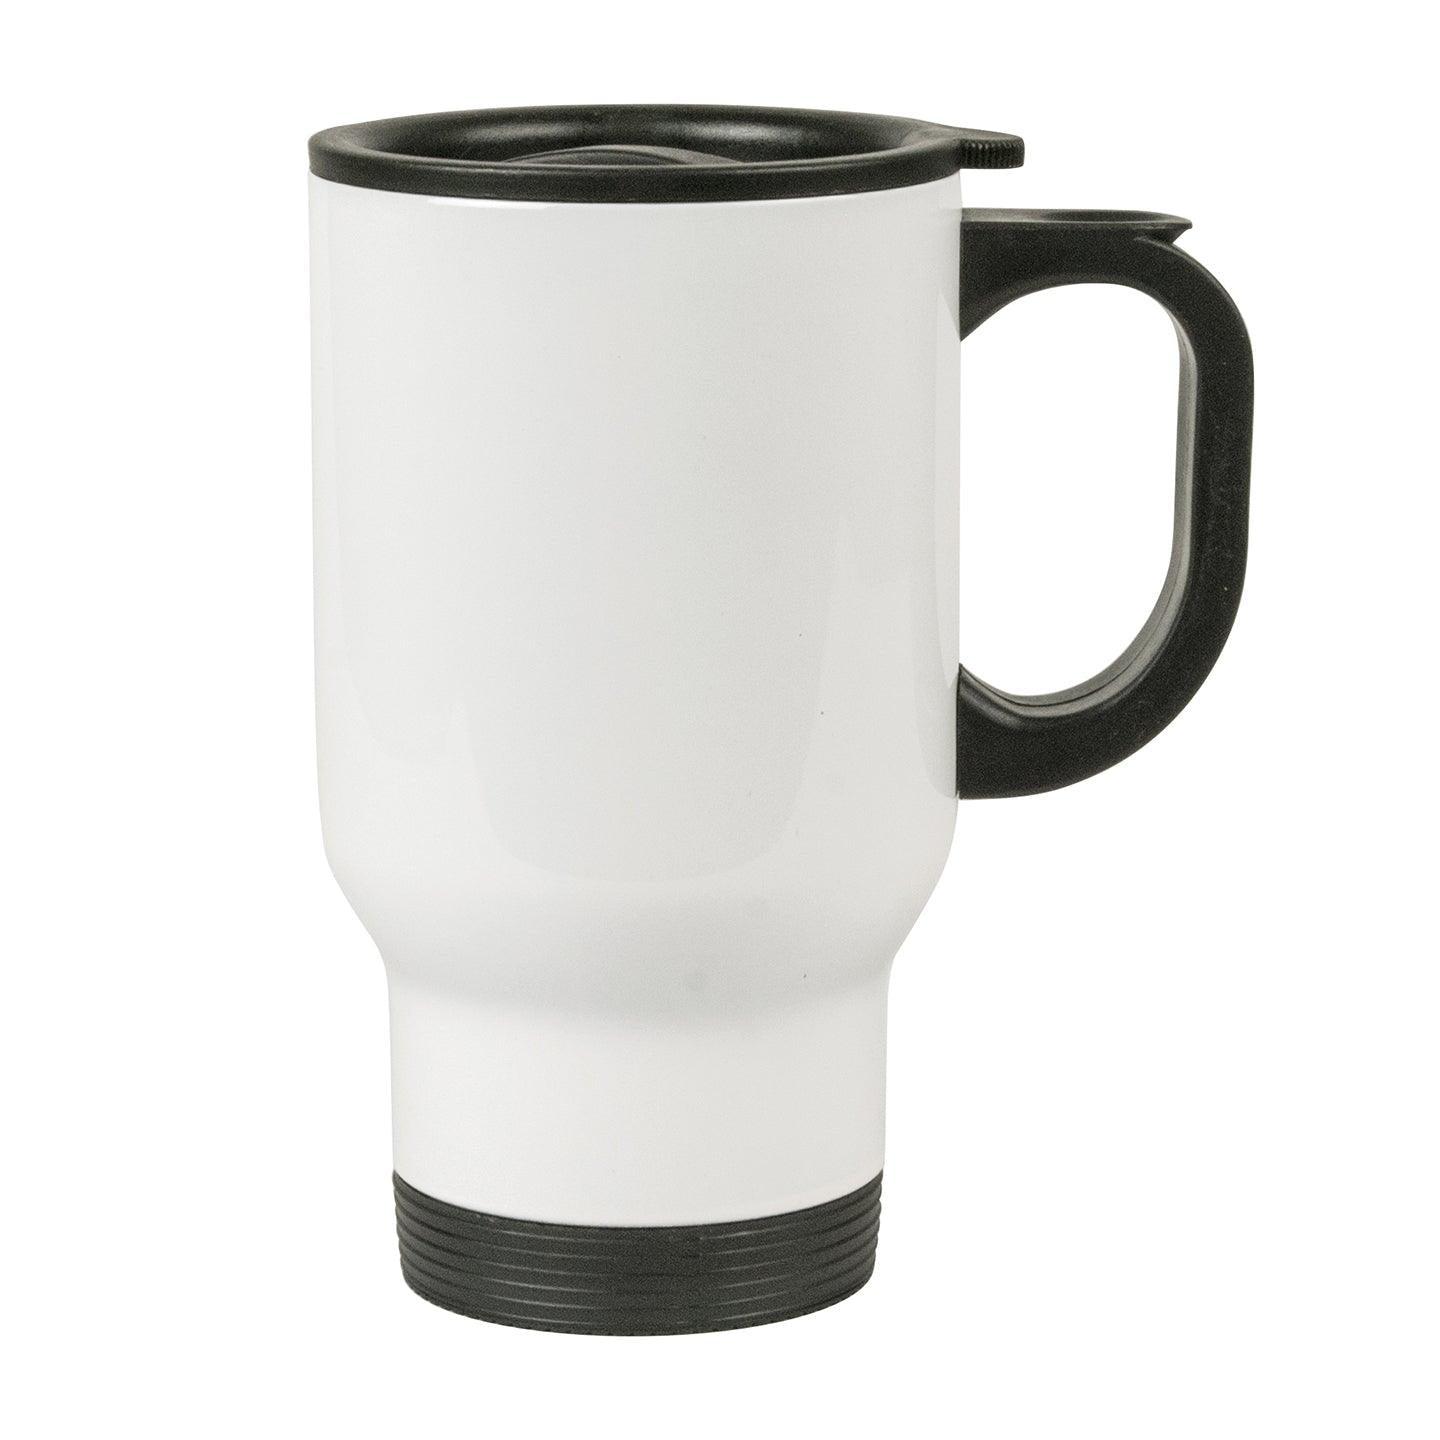 Thermos mug - Stainless steel thermos mugs